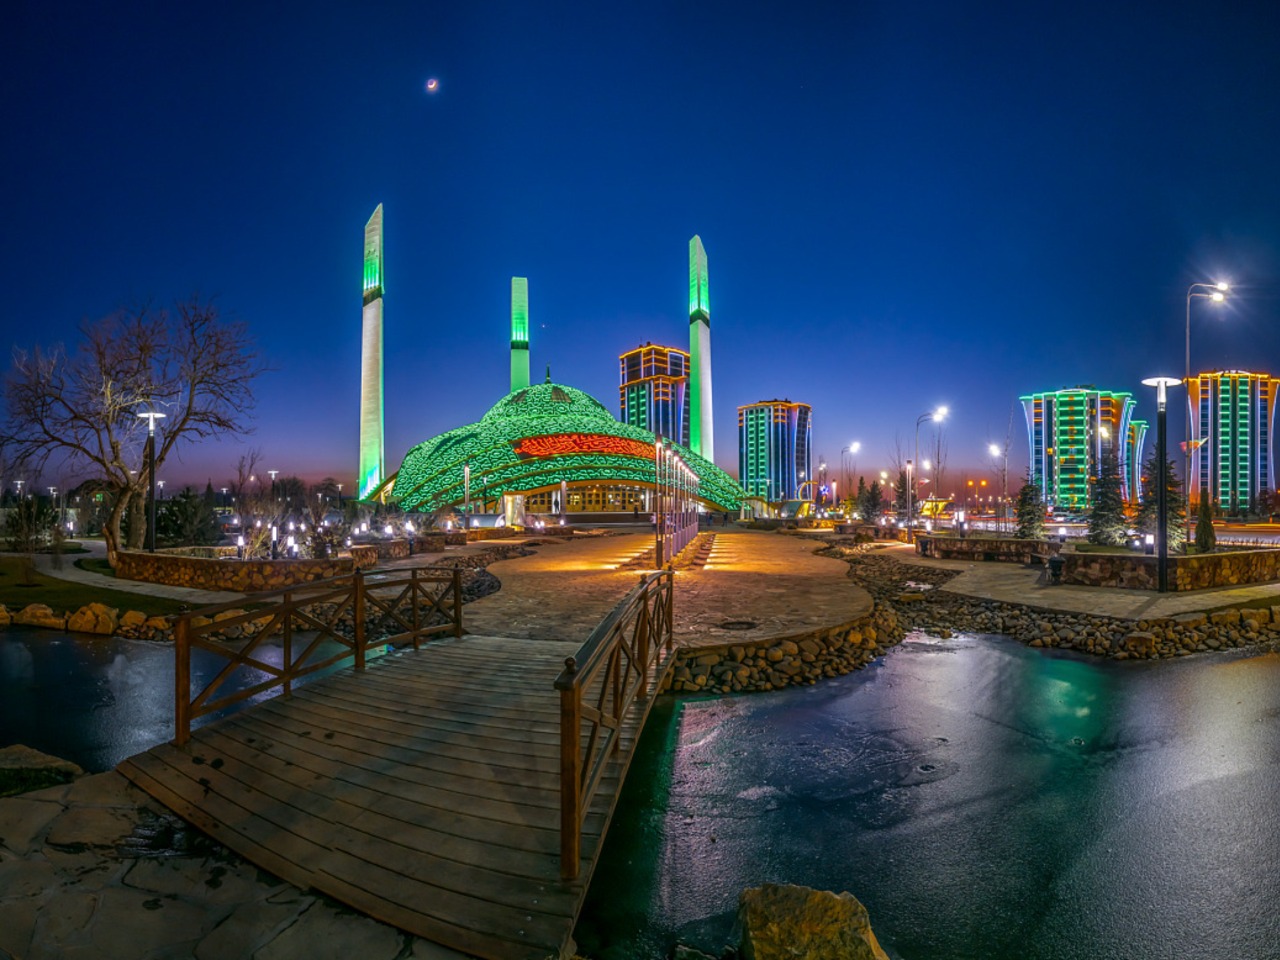 Вечерние мечети — краса и гордость Чечни! | Цена 6600₽, отзывы, описание экскурсии